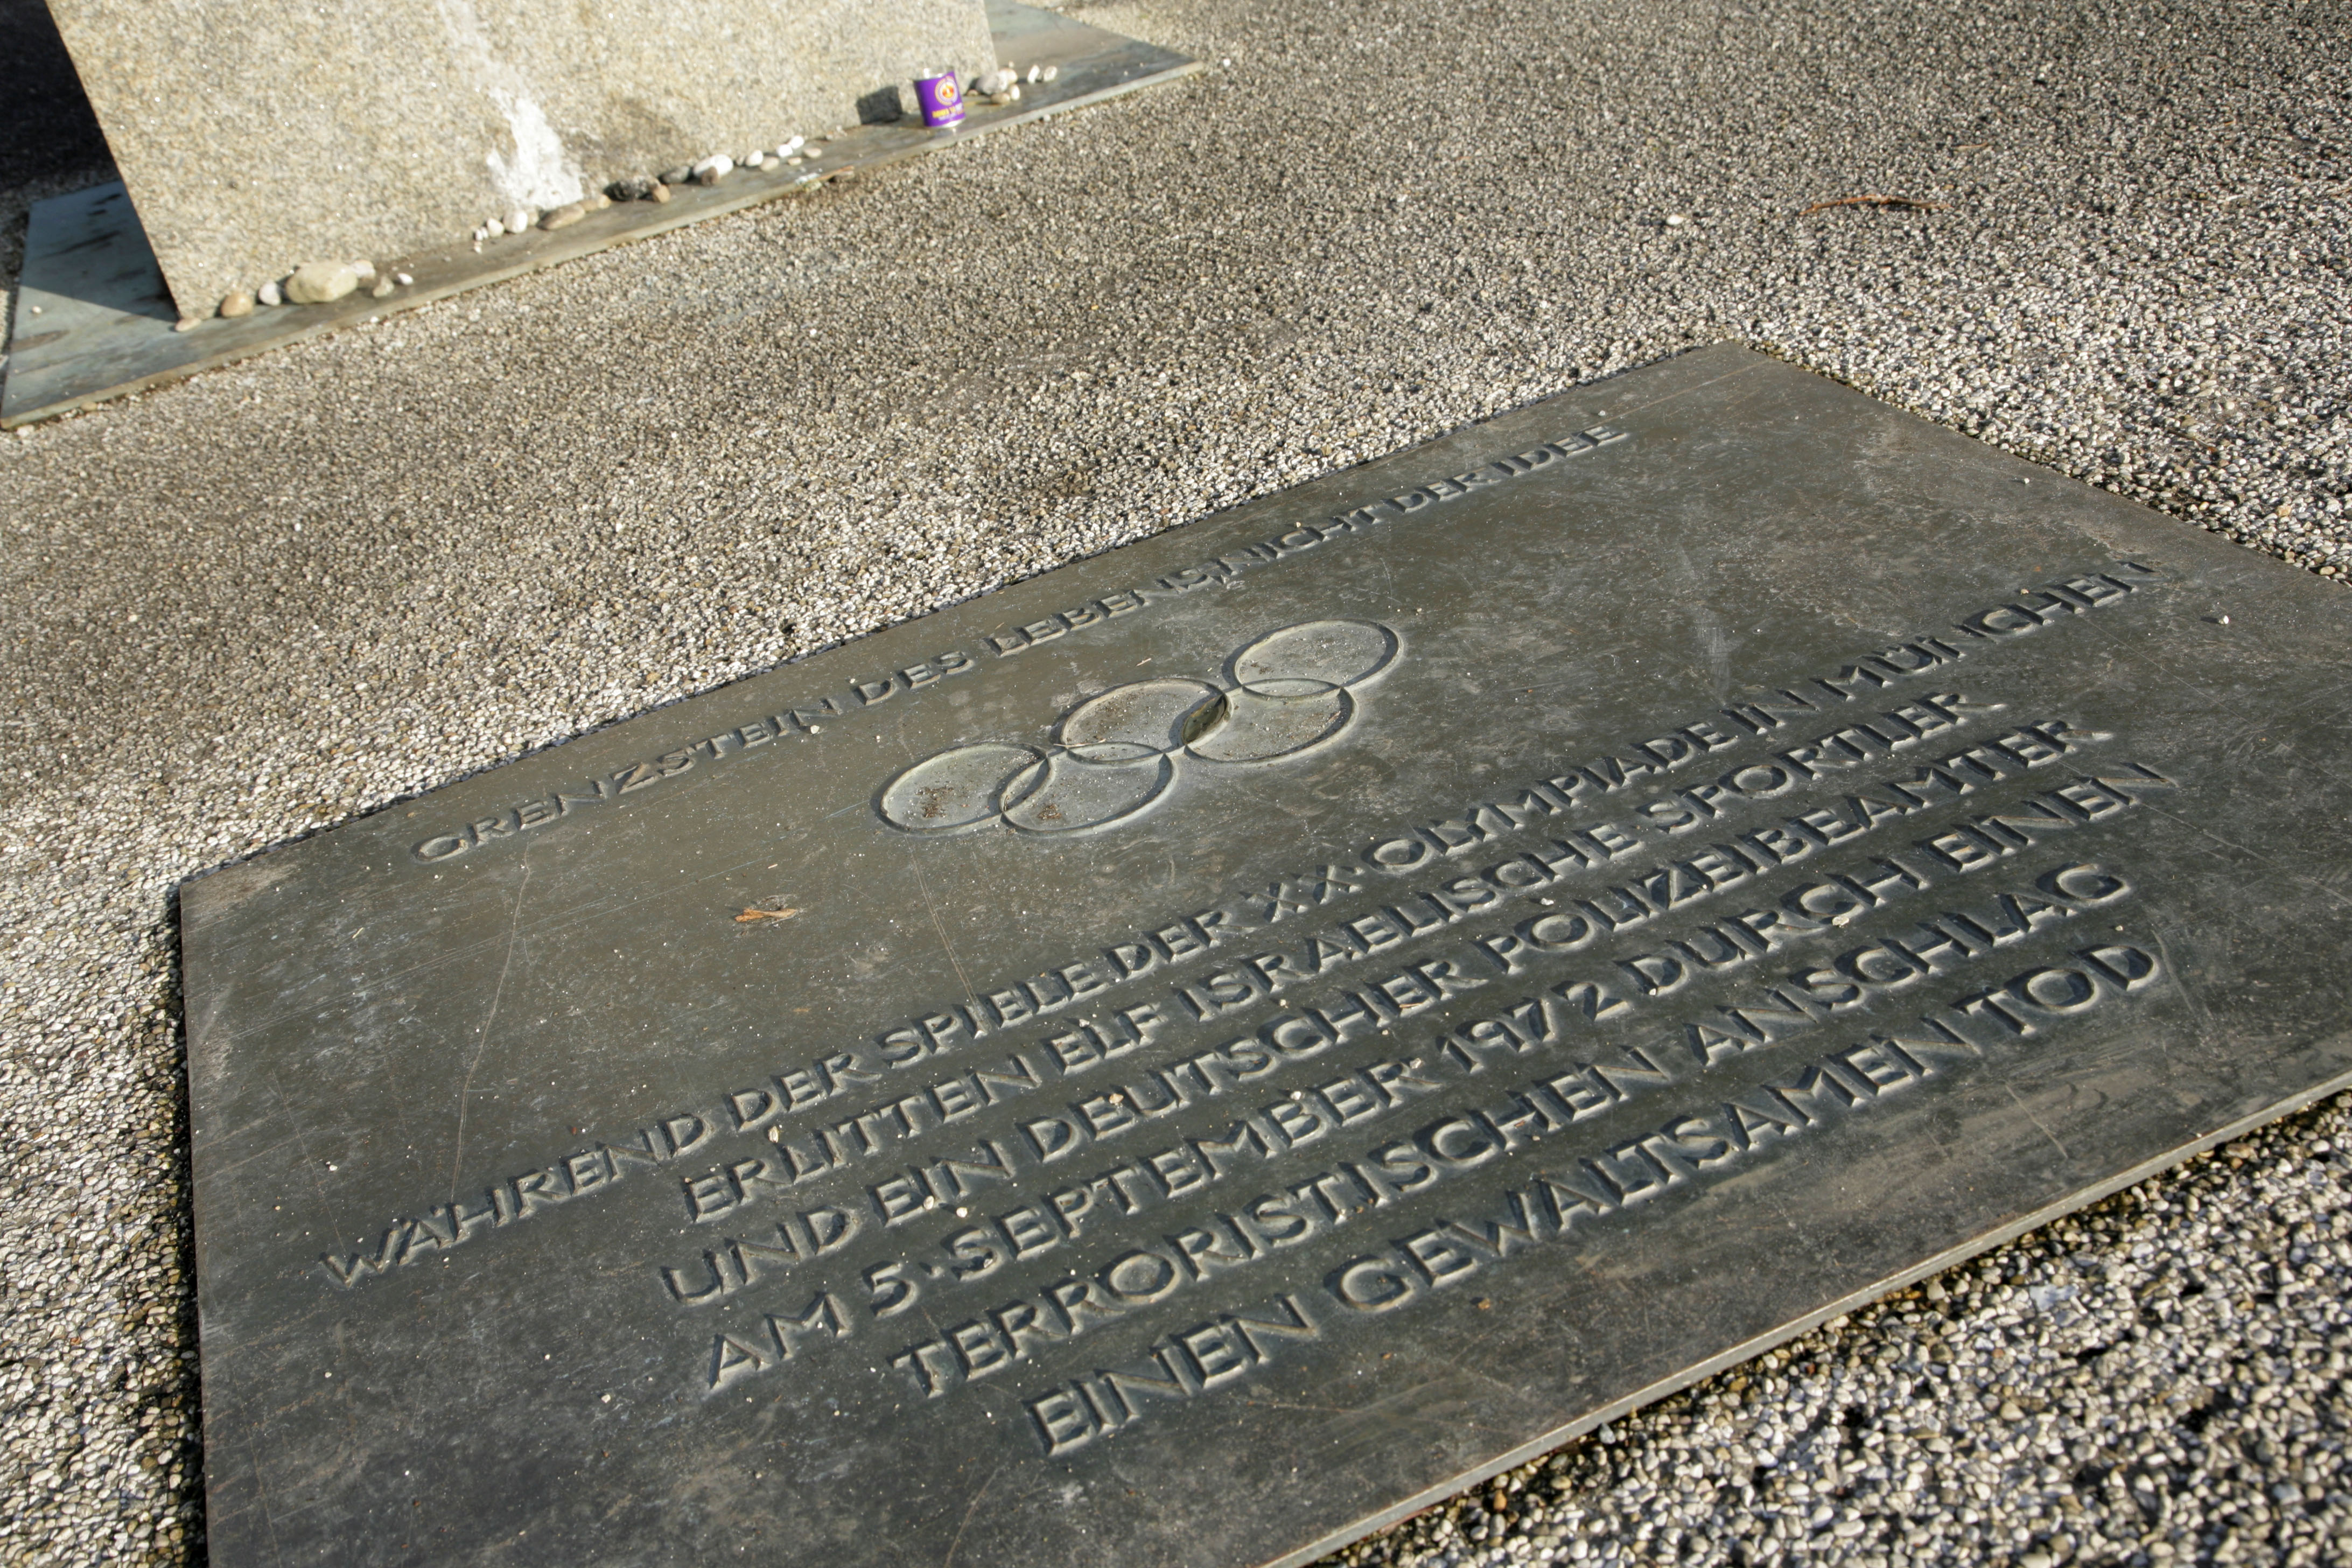 1972 Olympics memorial